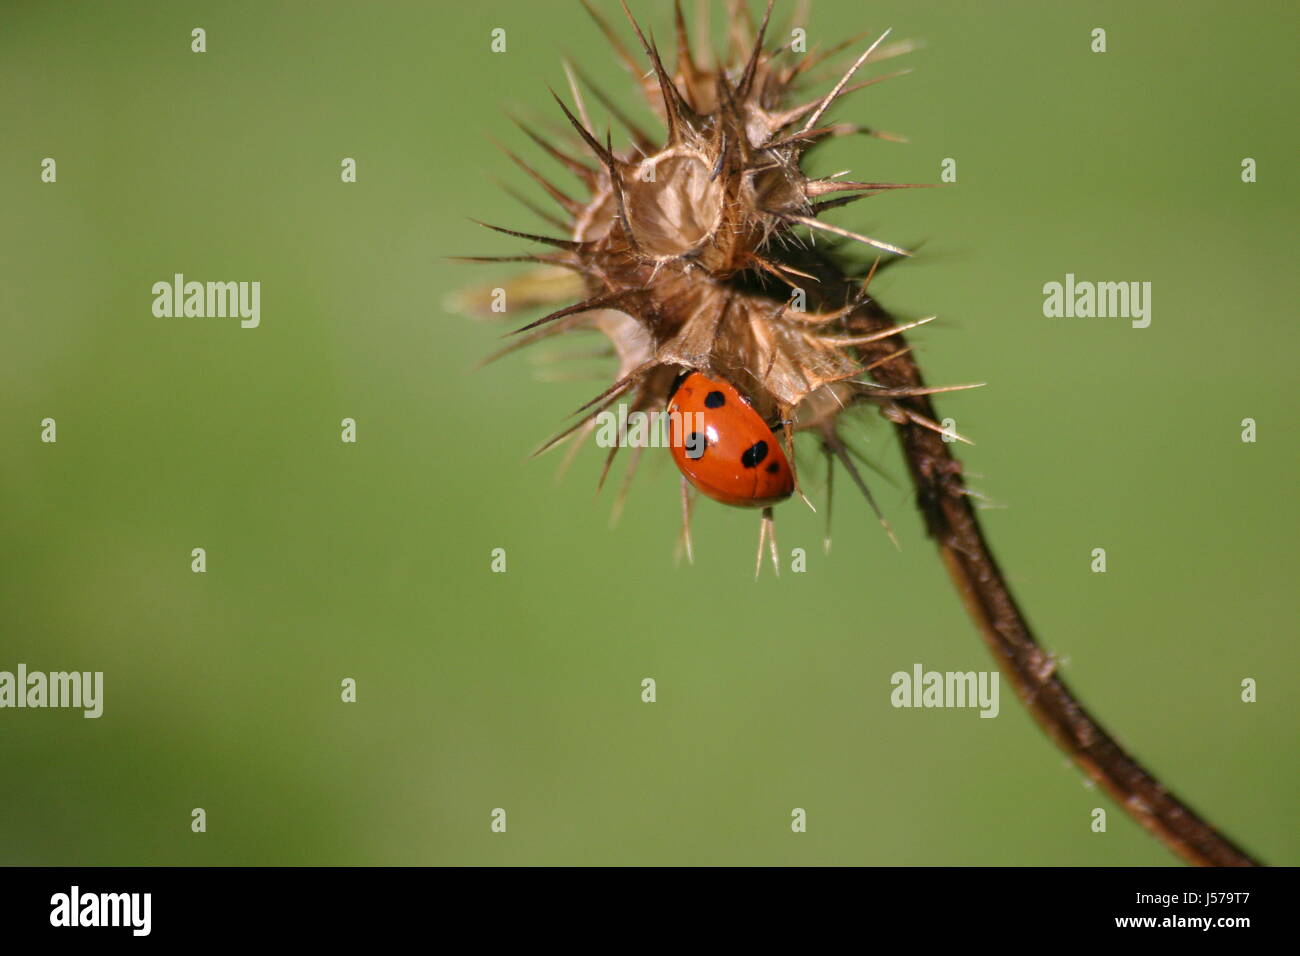 insect beetle ladybug siebenpunkt marienkfer siebenpunkt kerbtier coccinella Stock Photo